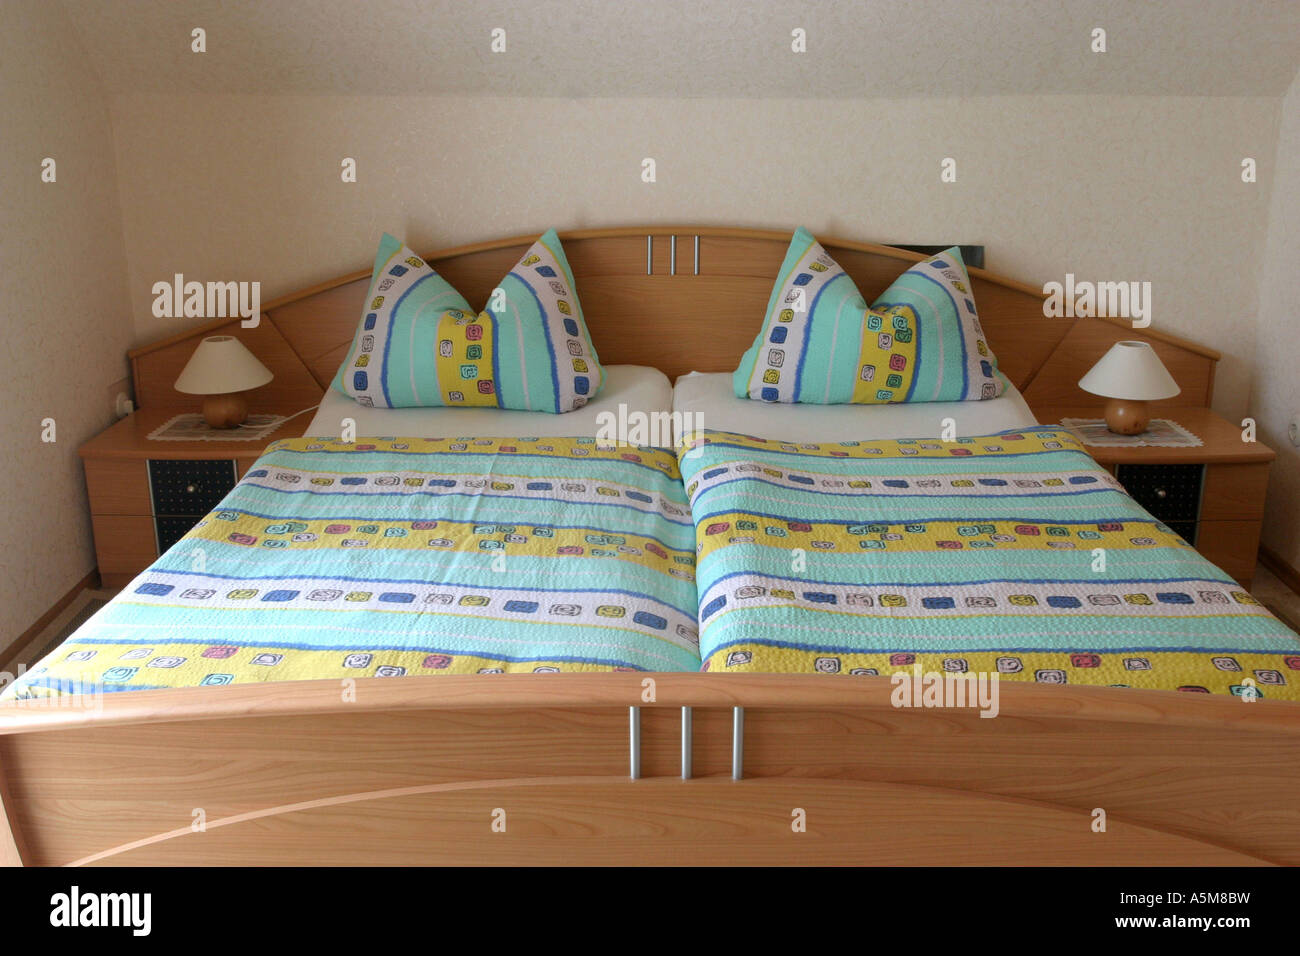 Doppelbett Bett Möbel mobiliare Schlafzimmer Bett Schlafplatz Wohnung Wohnraum Zimmer wohnen Stube Zu Hause daheim Heim Wohnungse Foto Stock